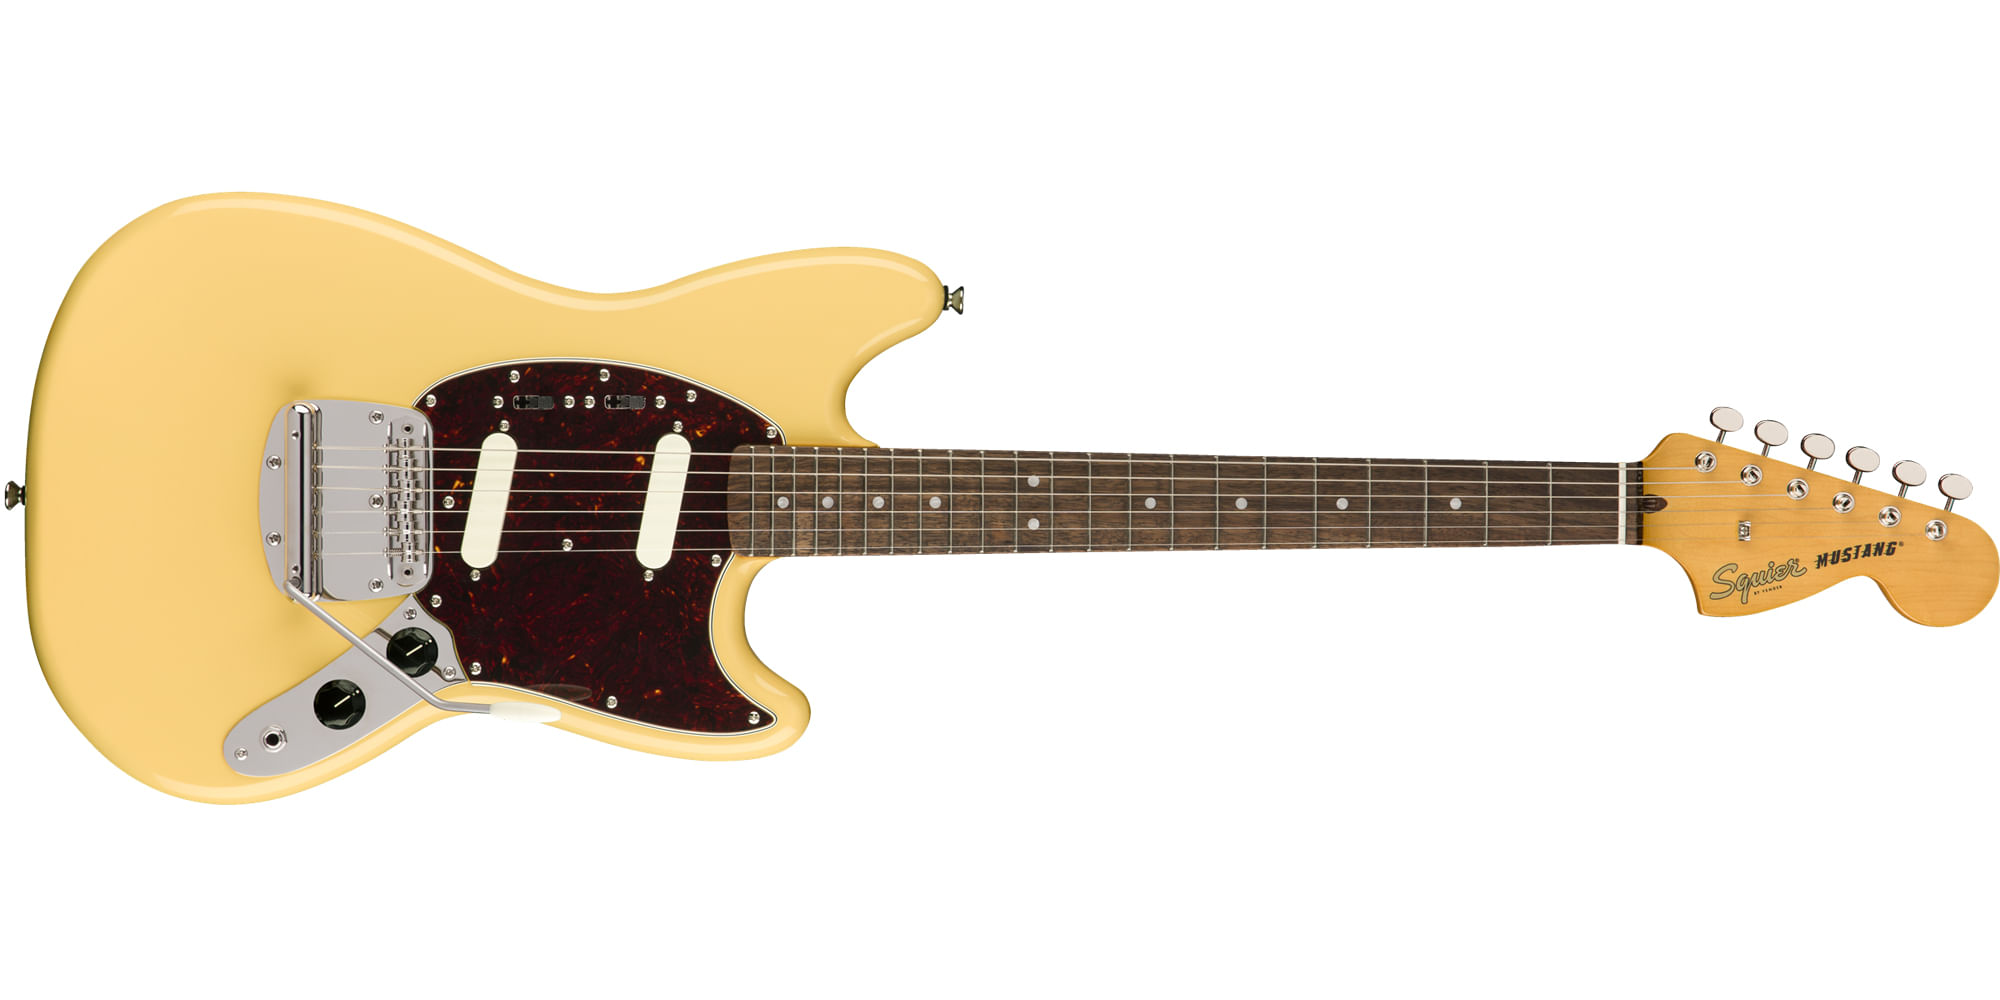 【お得新作登場】【新品】Squier by Fender Mustang【調整済み】 ギター